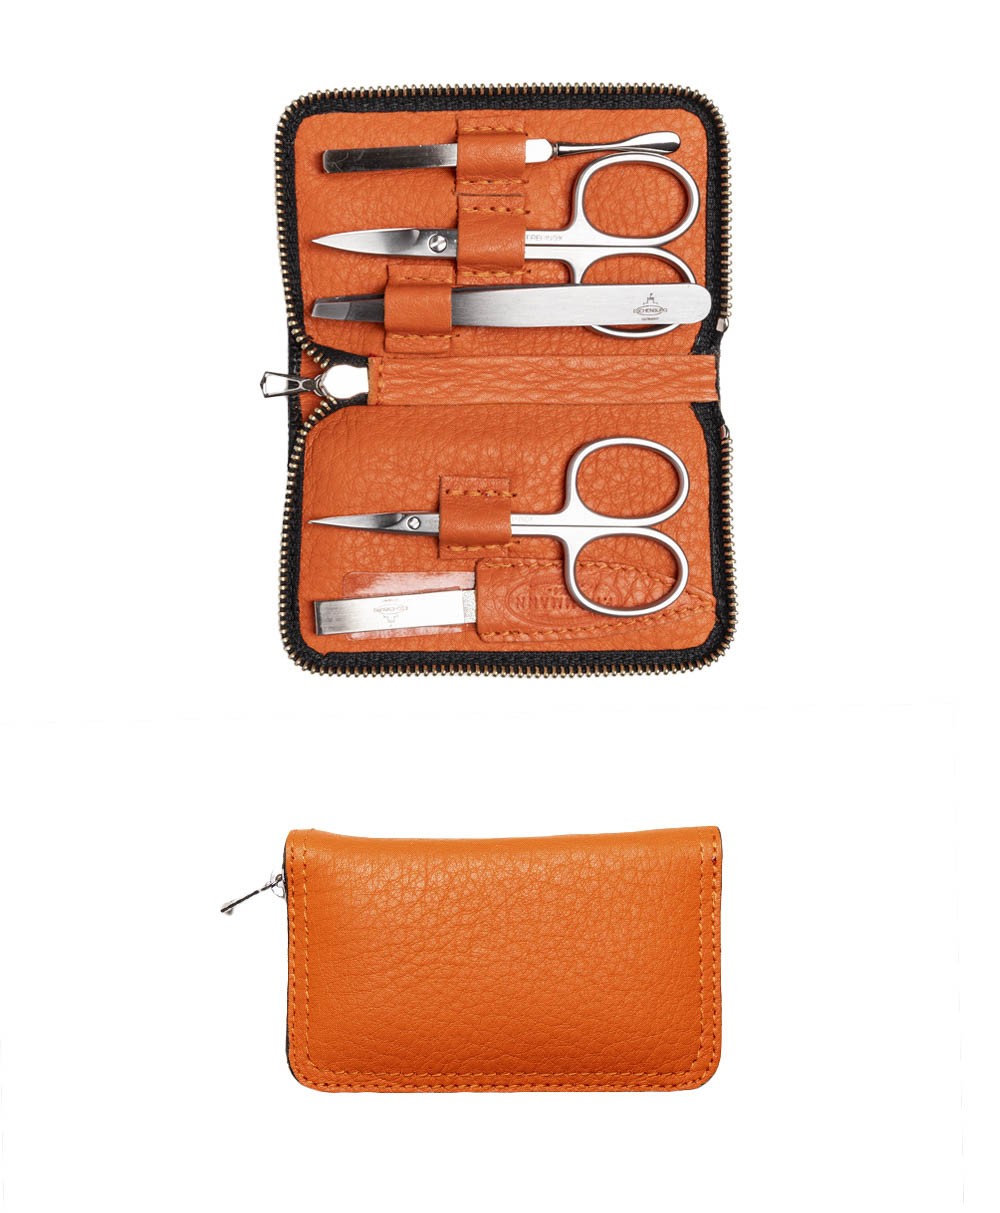 Das Produktbild zeigt das Chervo Manicure ZIP S – Maniküre-Etui Chervo Kalbleder in der Farbe orange – im Onlineshop RAUM concept store